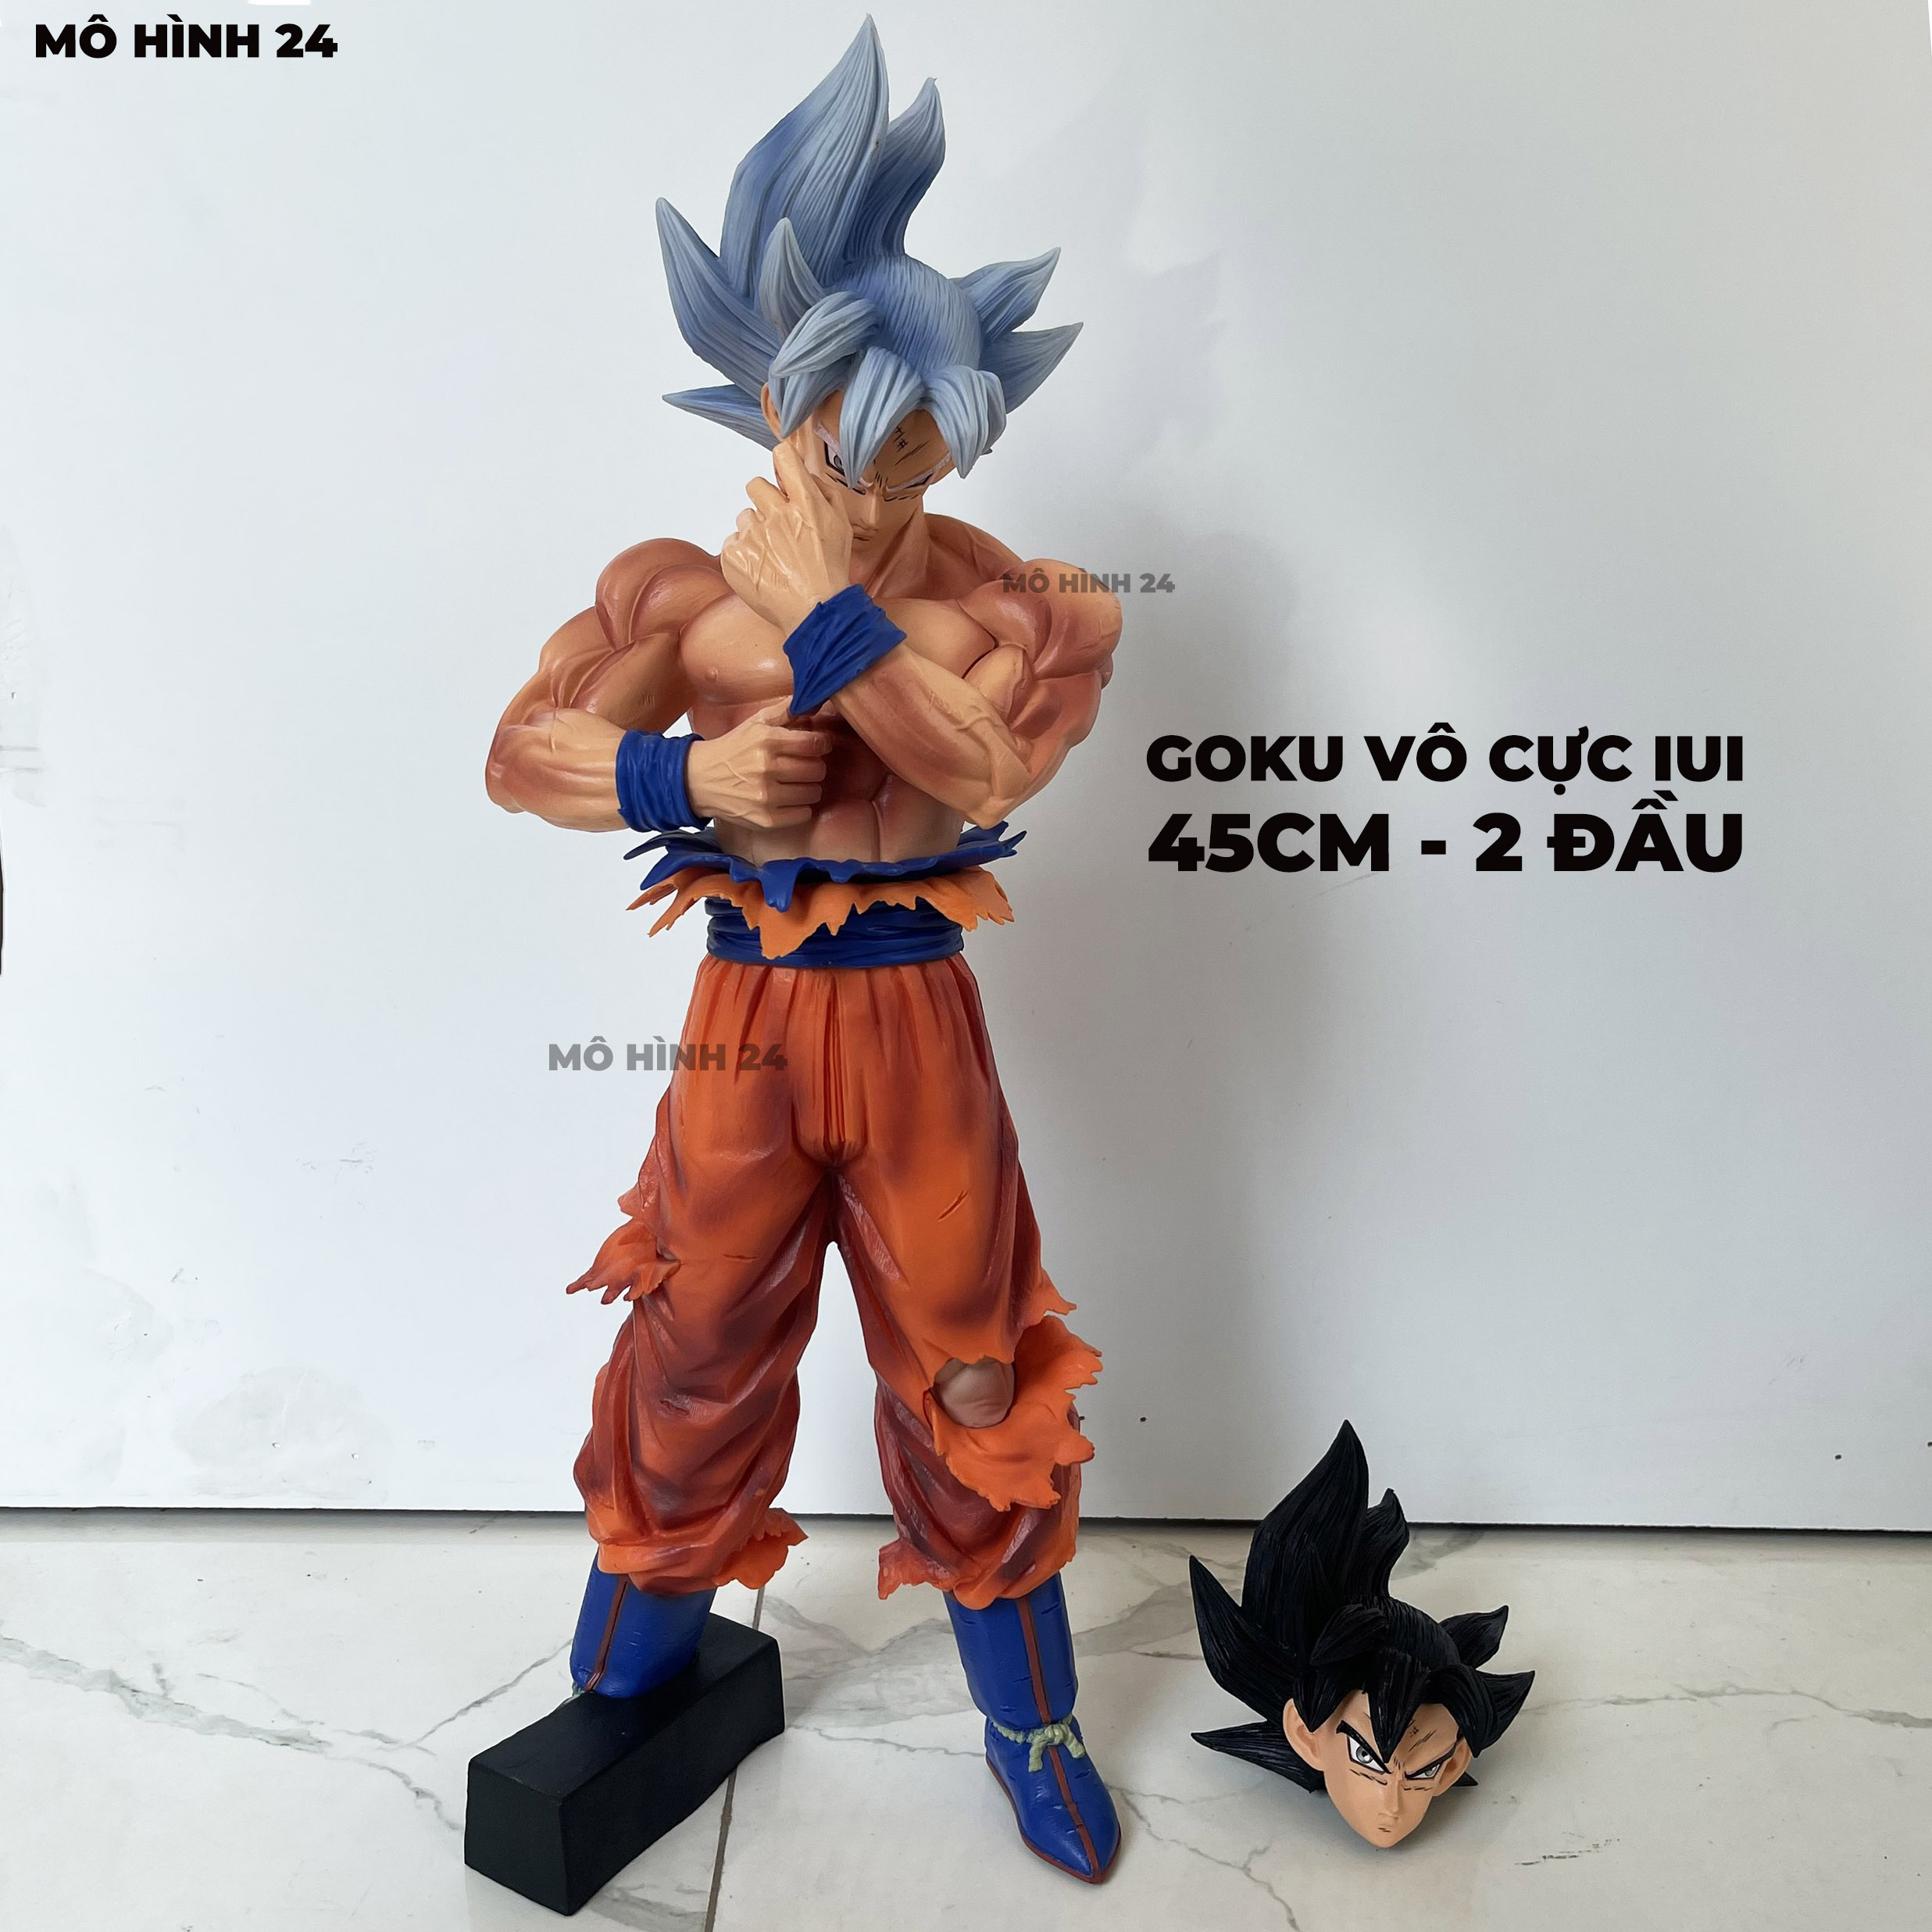 [CAO 45CM] Mô hình nhân vật Son Goku IUI Vô cực 45cm figure UI dragonball dragon ball ultimate ngầu 24group INFINITE